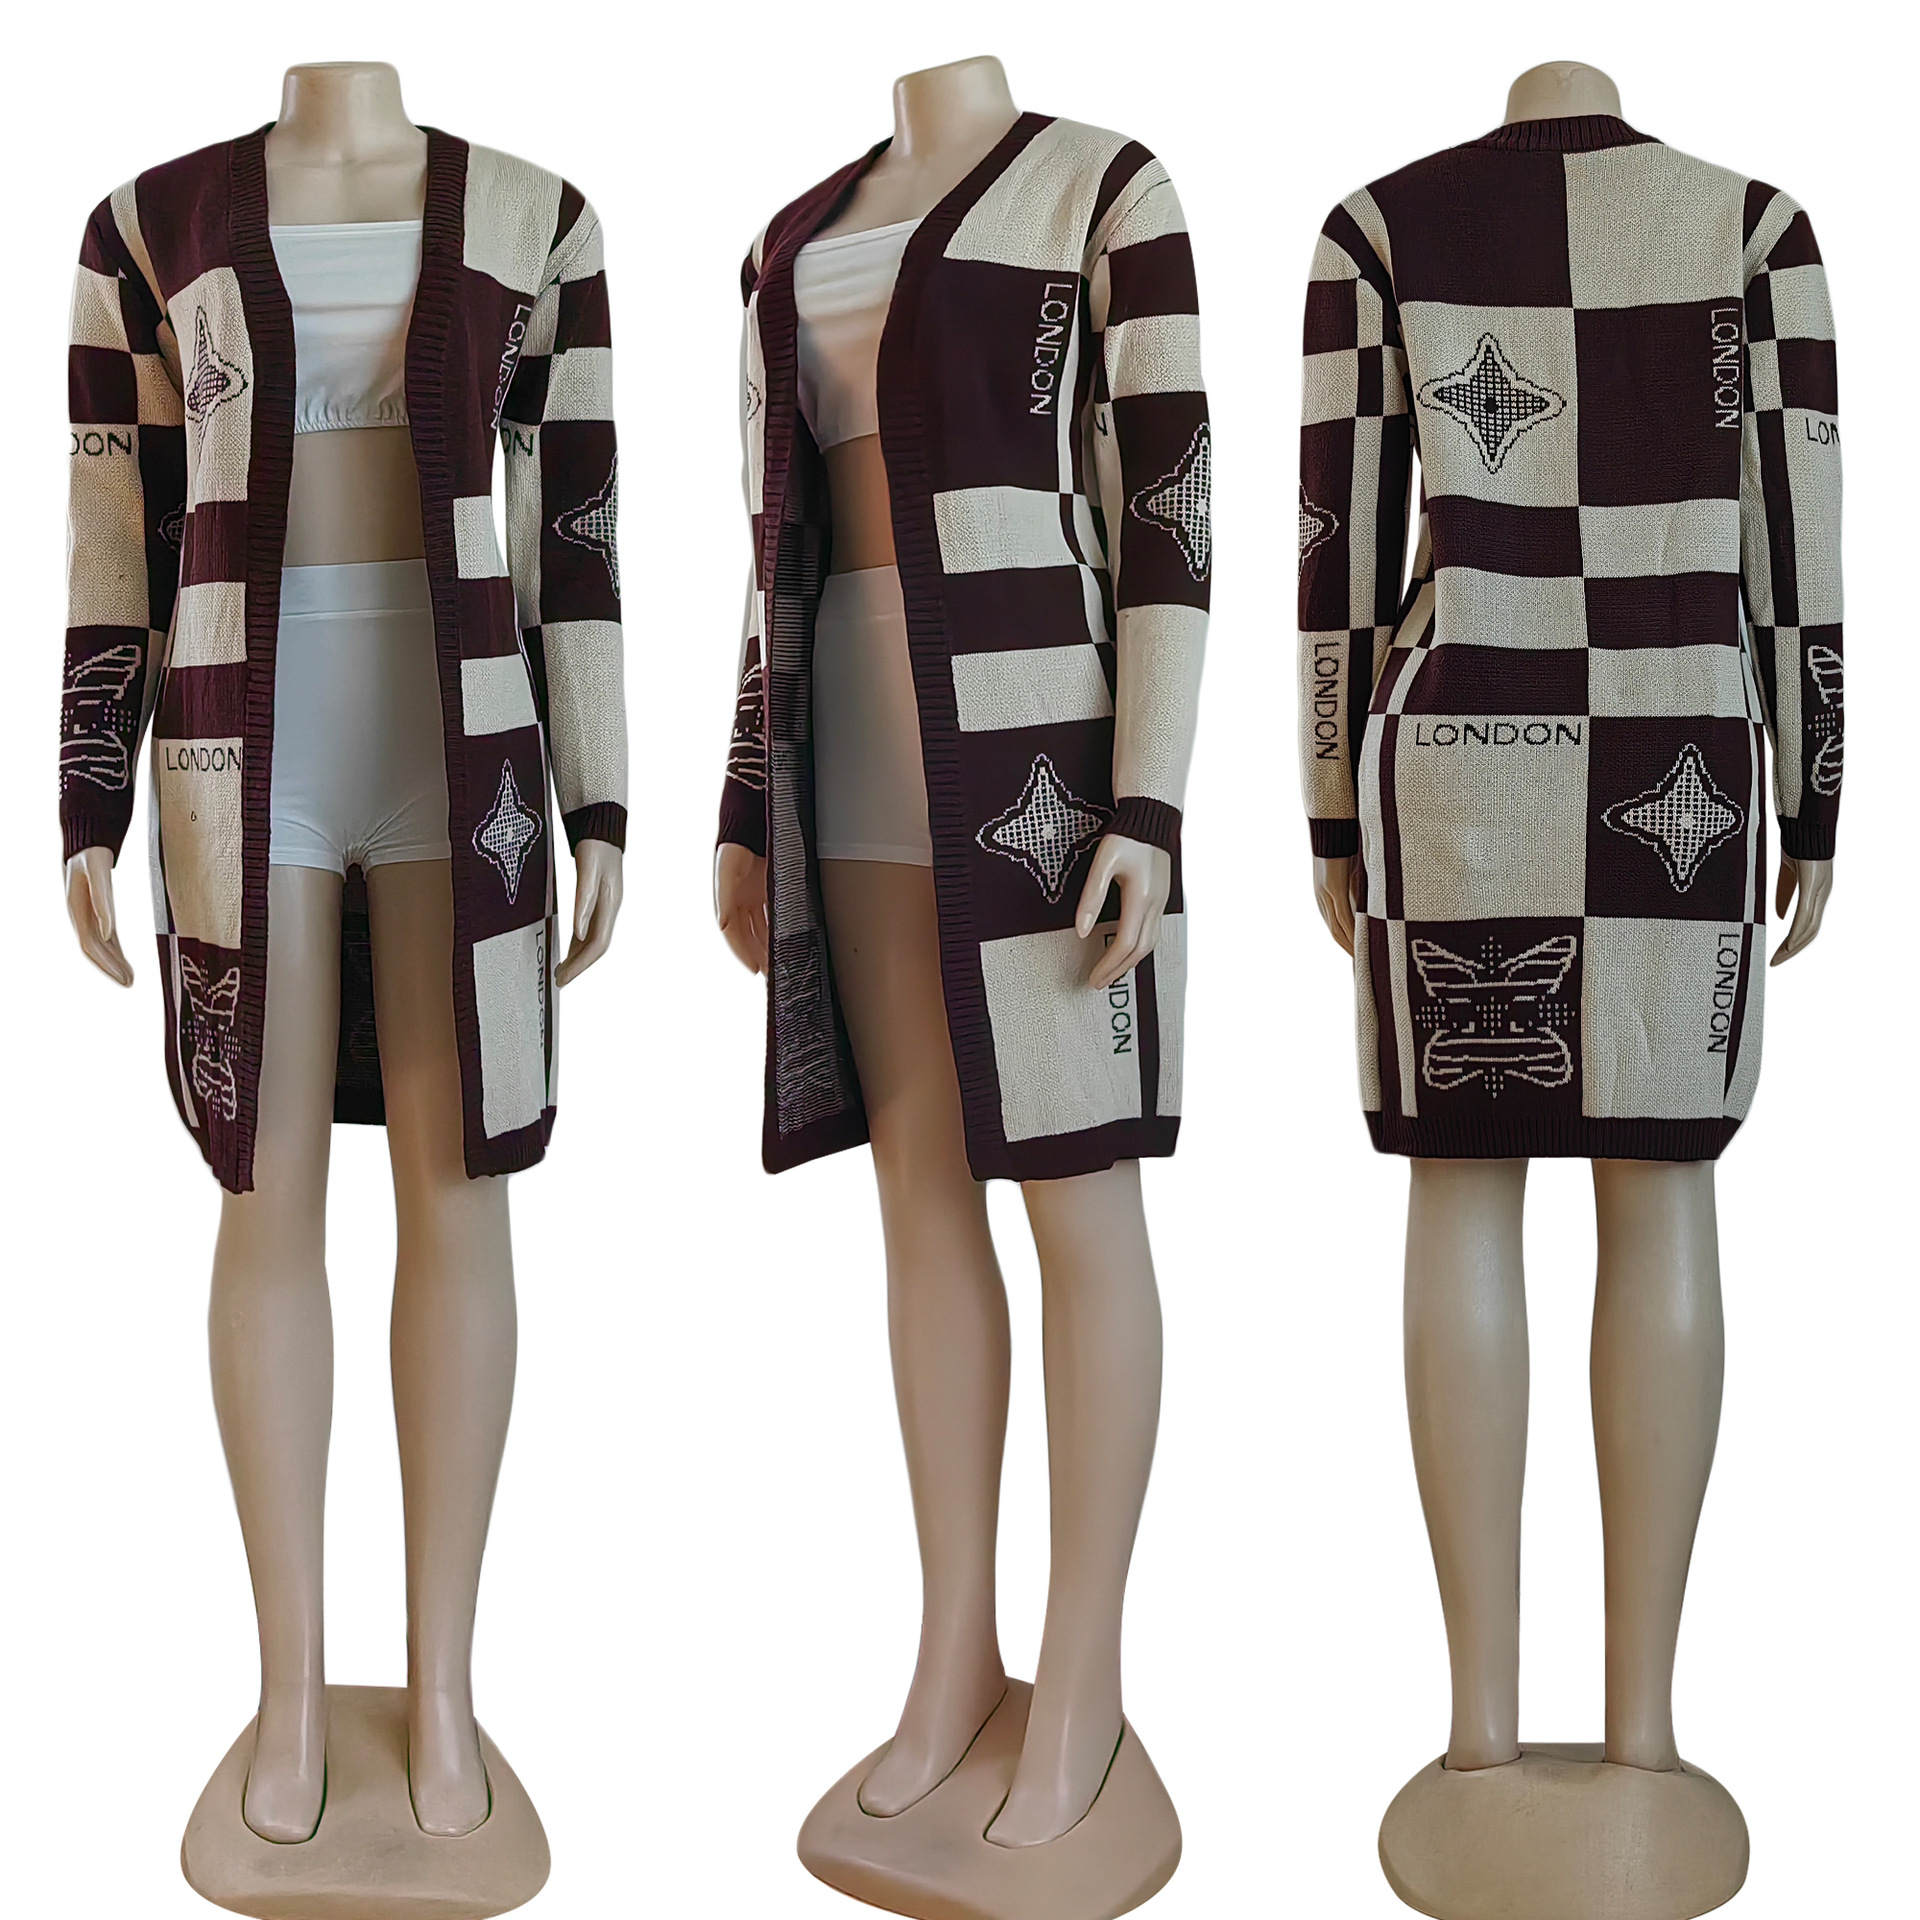 스웨터 카디건 여성 캐주얼 니트 스웨터 카디건 코트 따뜻한 겉옷 무료 배